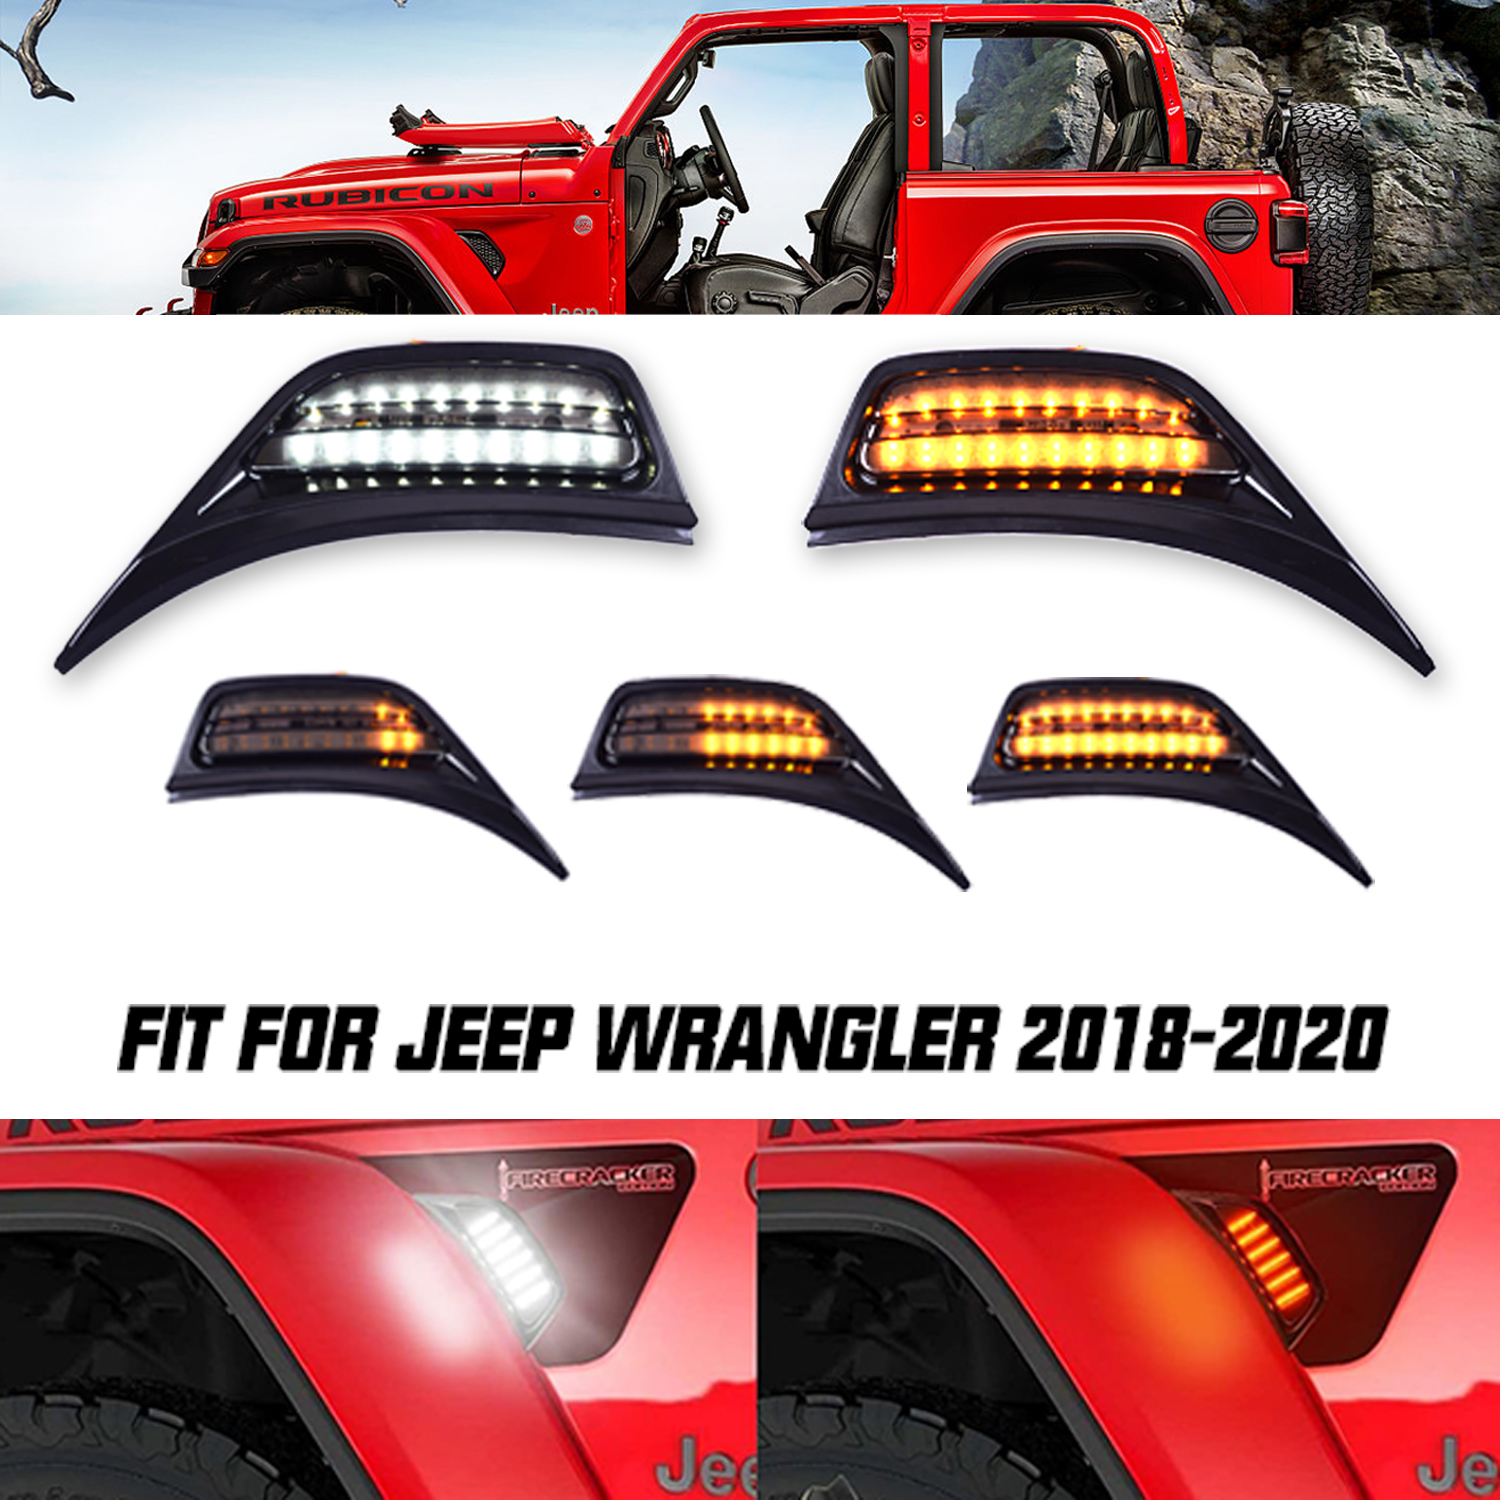 2 Pcs LED Sequential Side Marker Light Front Fender Vent Light for Jeep Wrangler JL 2018-2020 ​LED Amber Blinker Turn Signal Lights & White Day Running Lamps